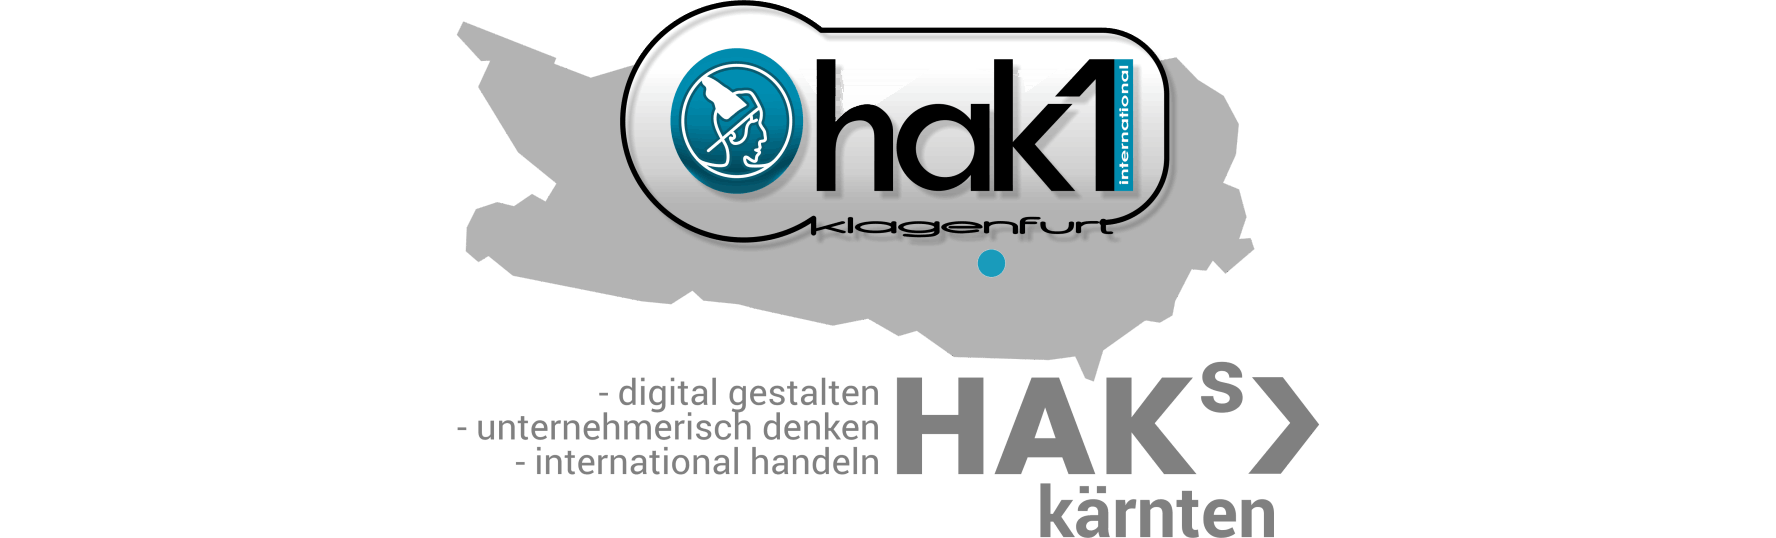 CWS HAK 1 International